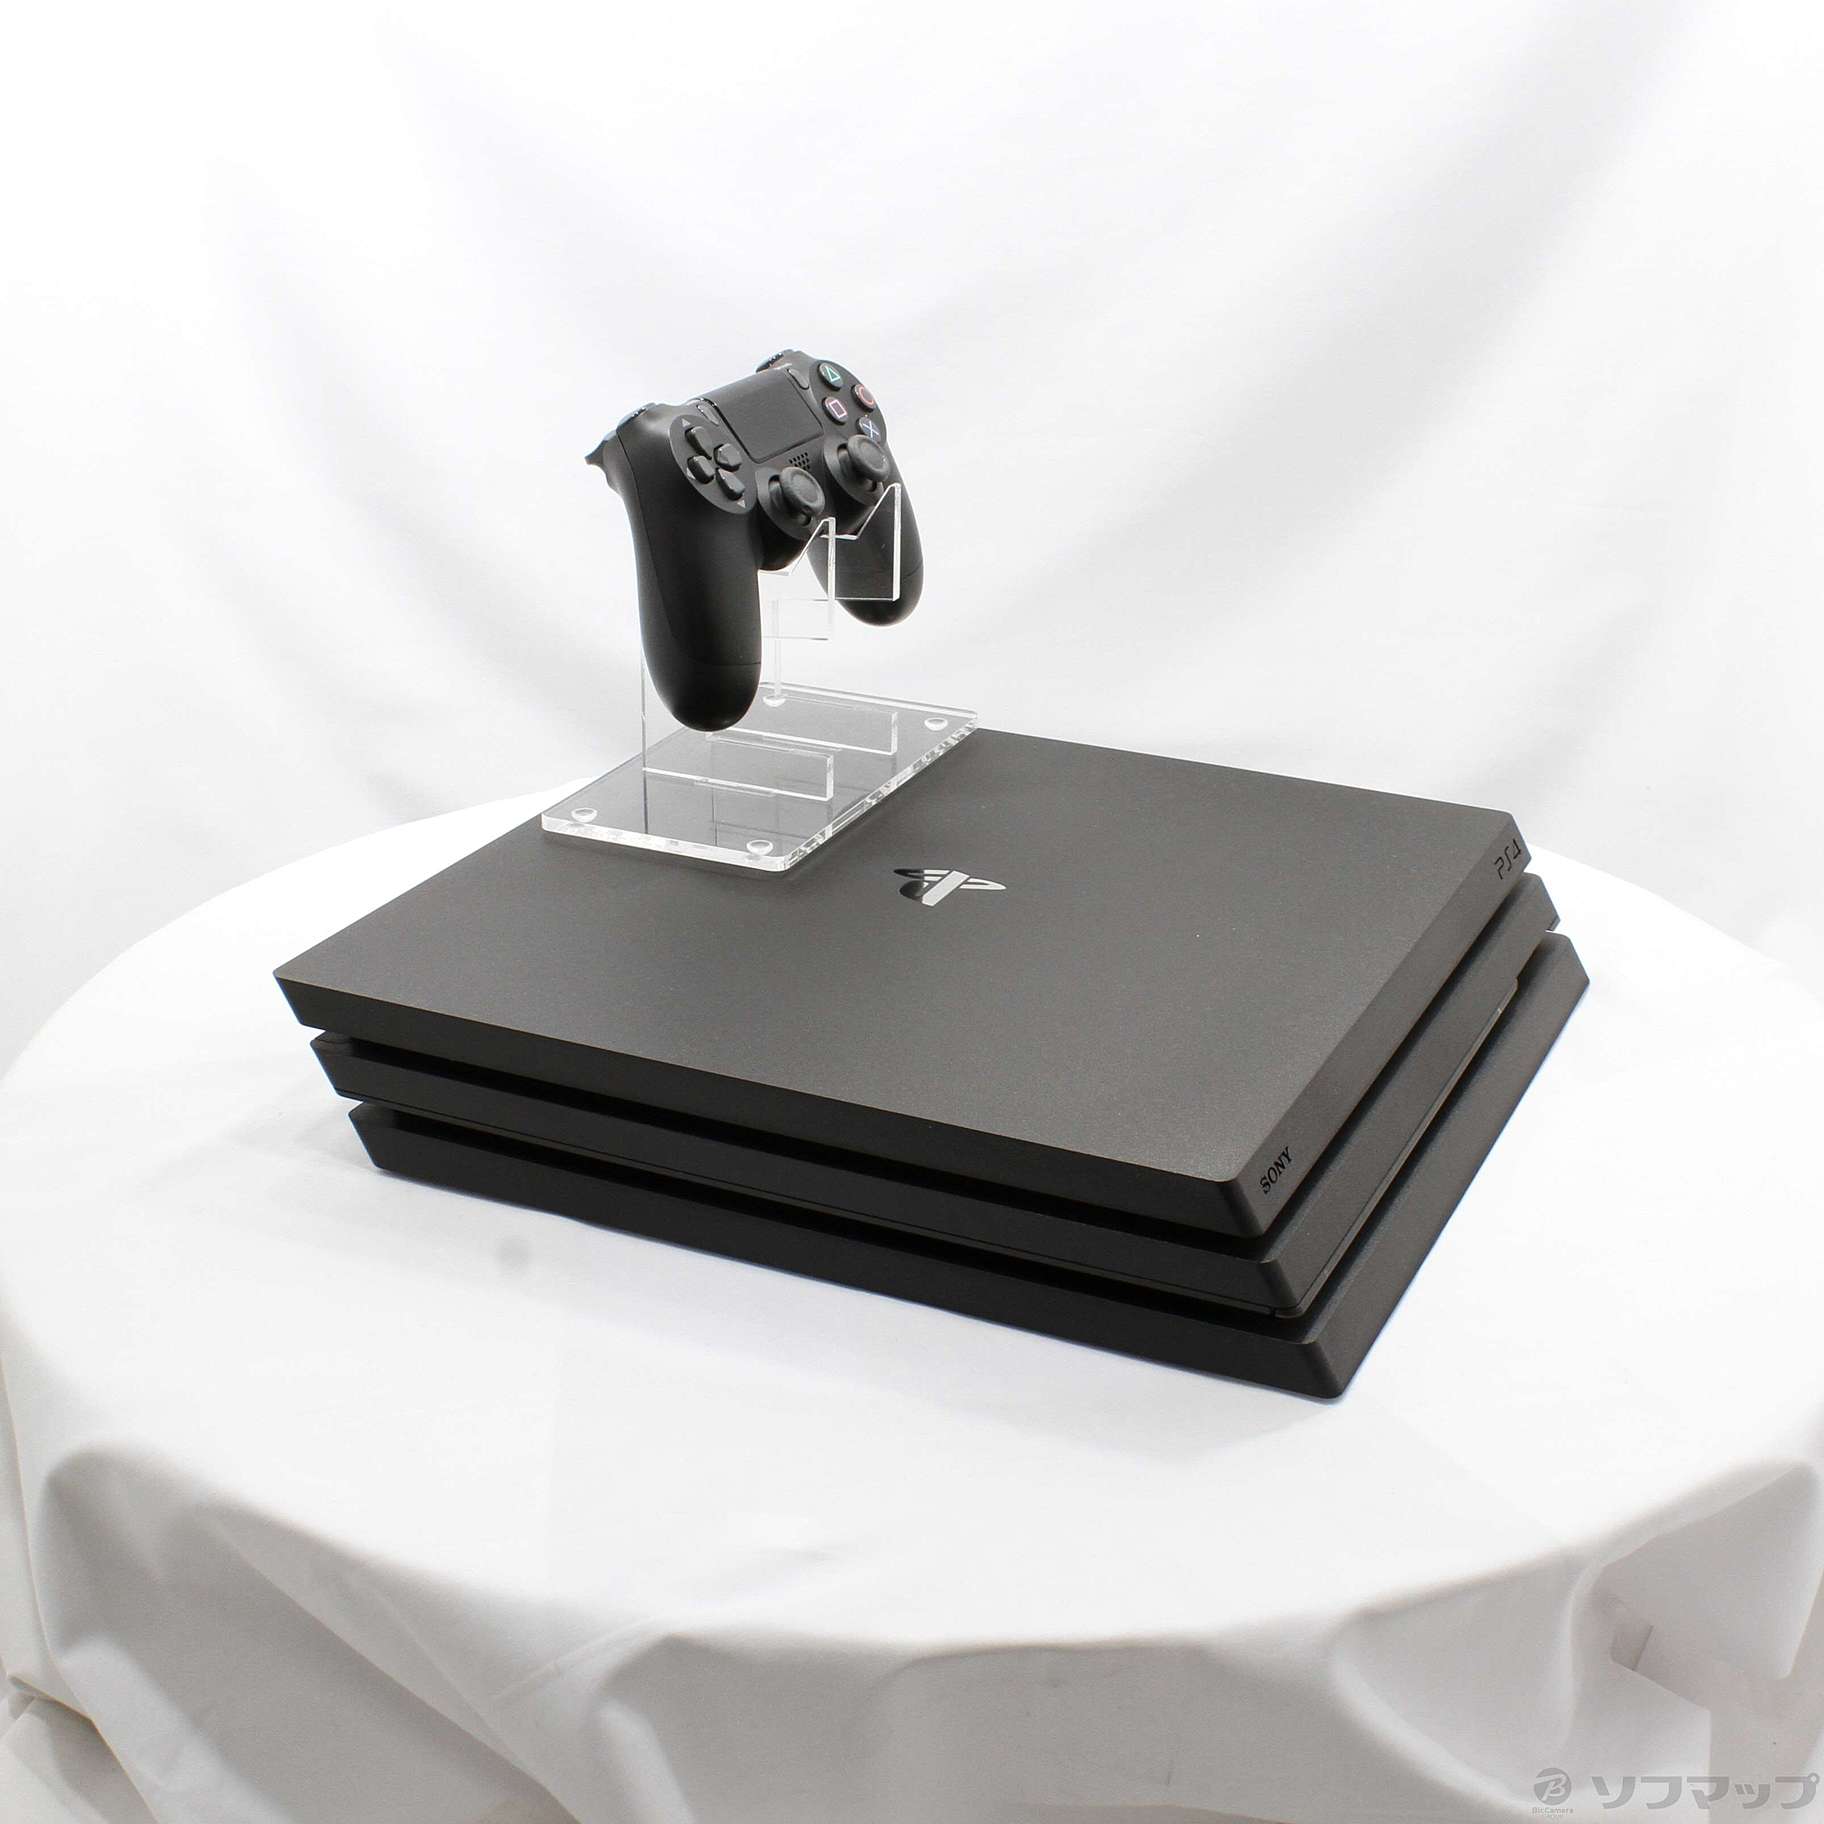 中古品〕 PlayStation 4 Pro ジェット・ブラック 1TB CUH-7200BB01｜の 